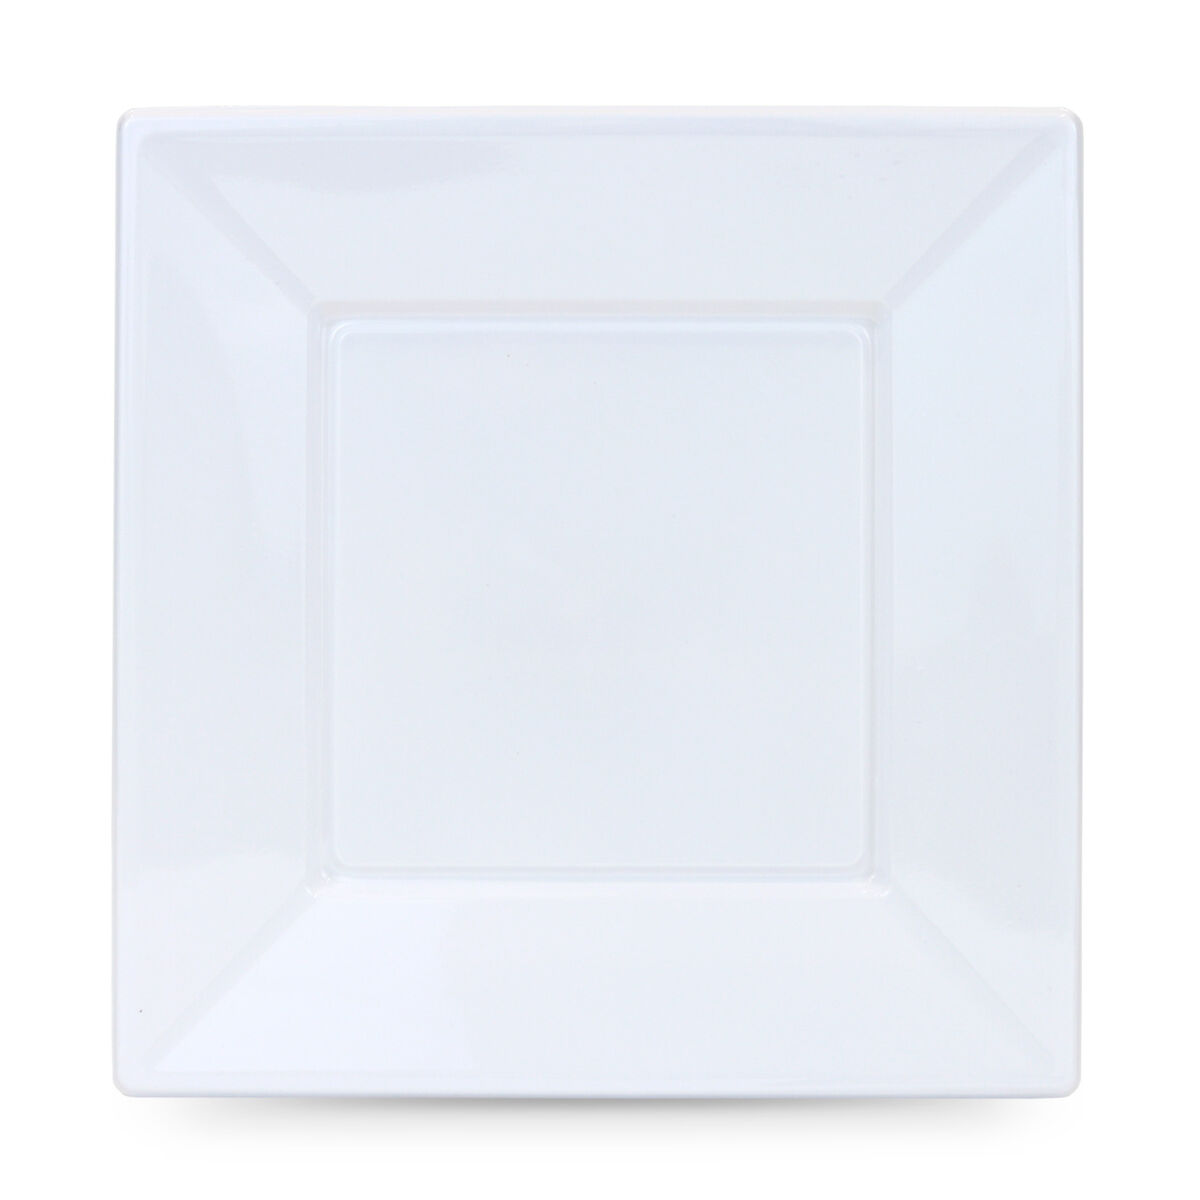 Mehrweg-Teller-Set Algon karriert Weiß Kunststoff 23 cm 12 Stück